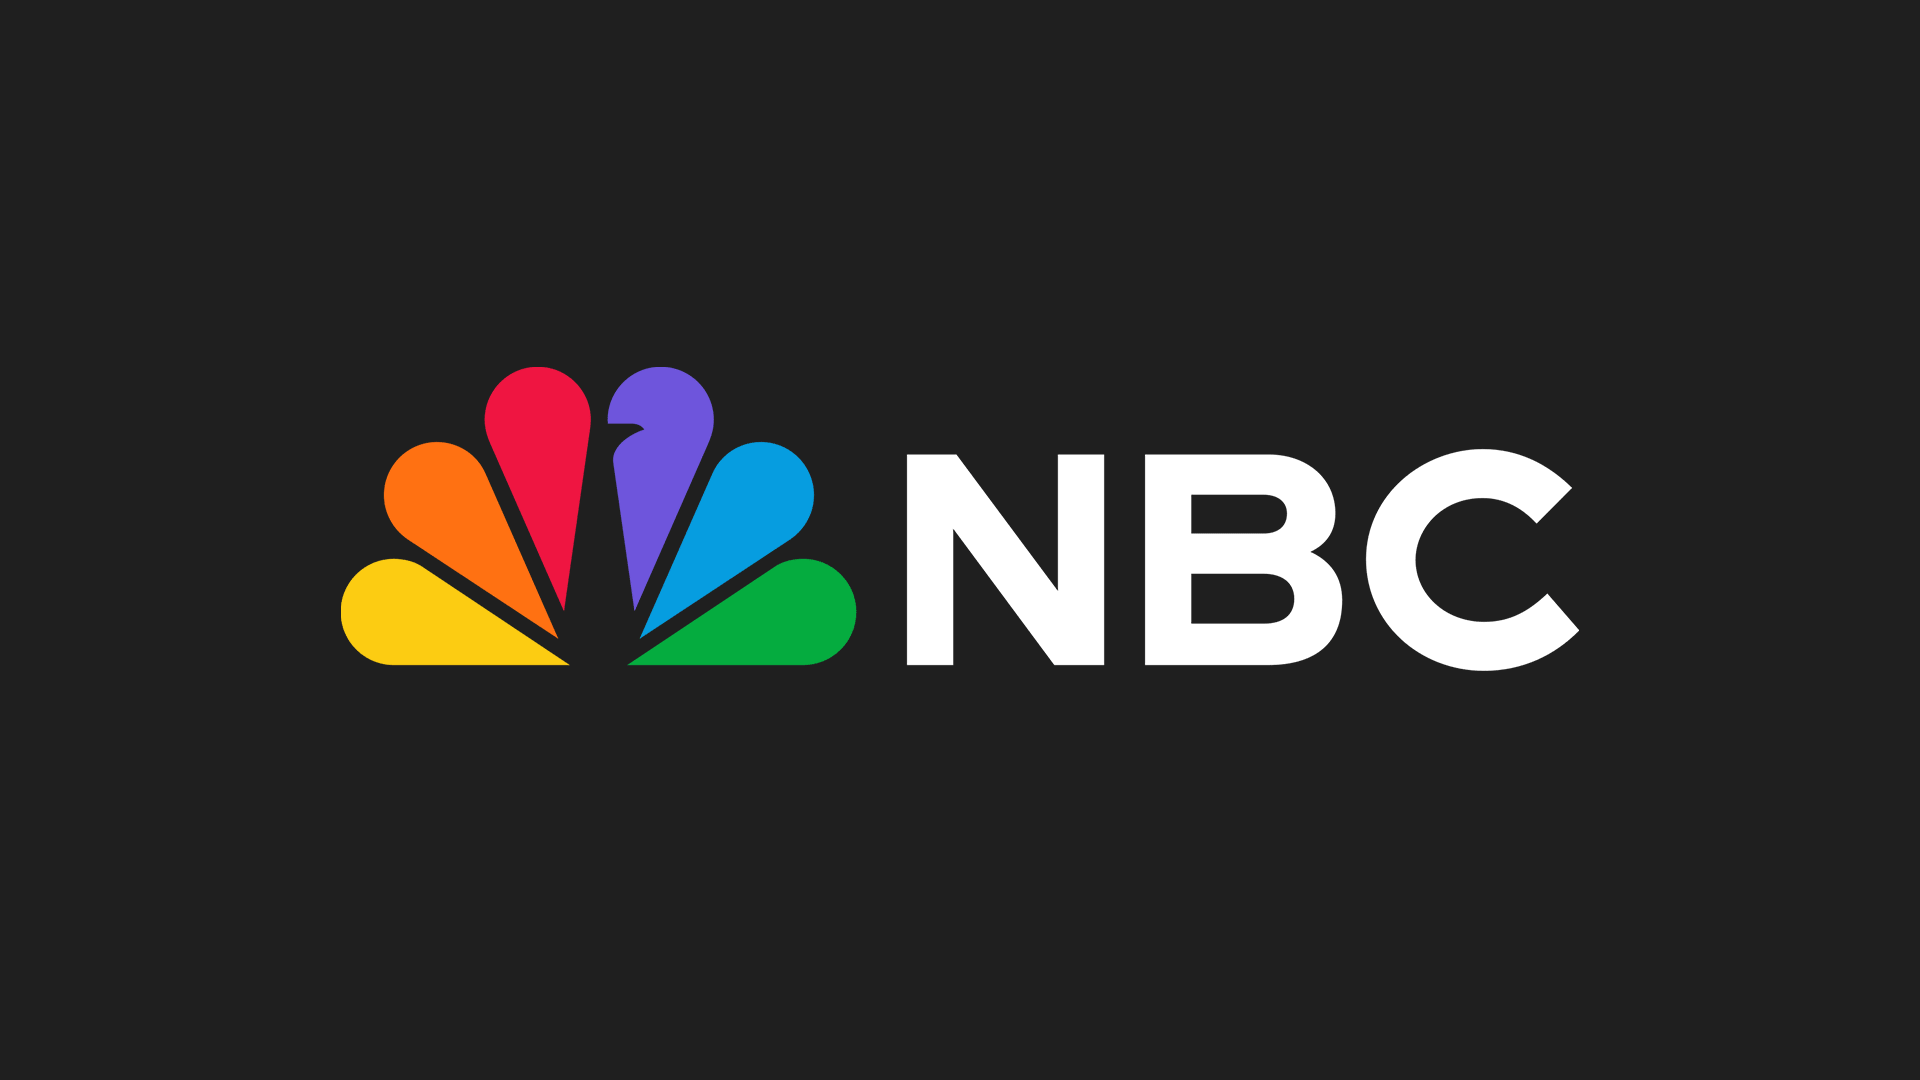 美國國家廣播公司NBC 更新彩色孔雀LOGO，賦予更鮮豔明亮的色彩 7